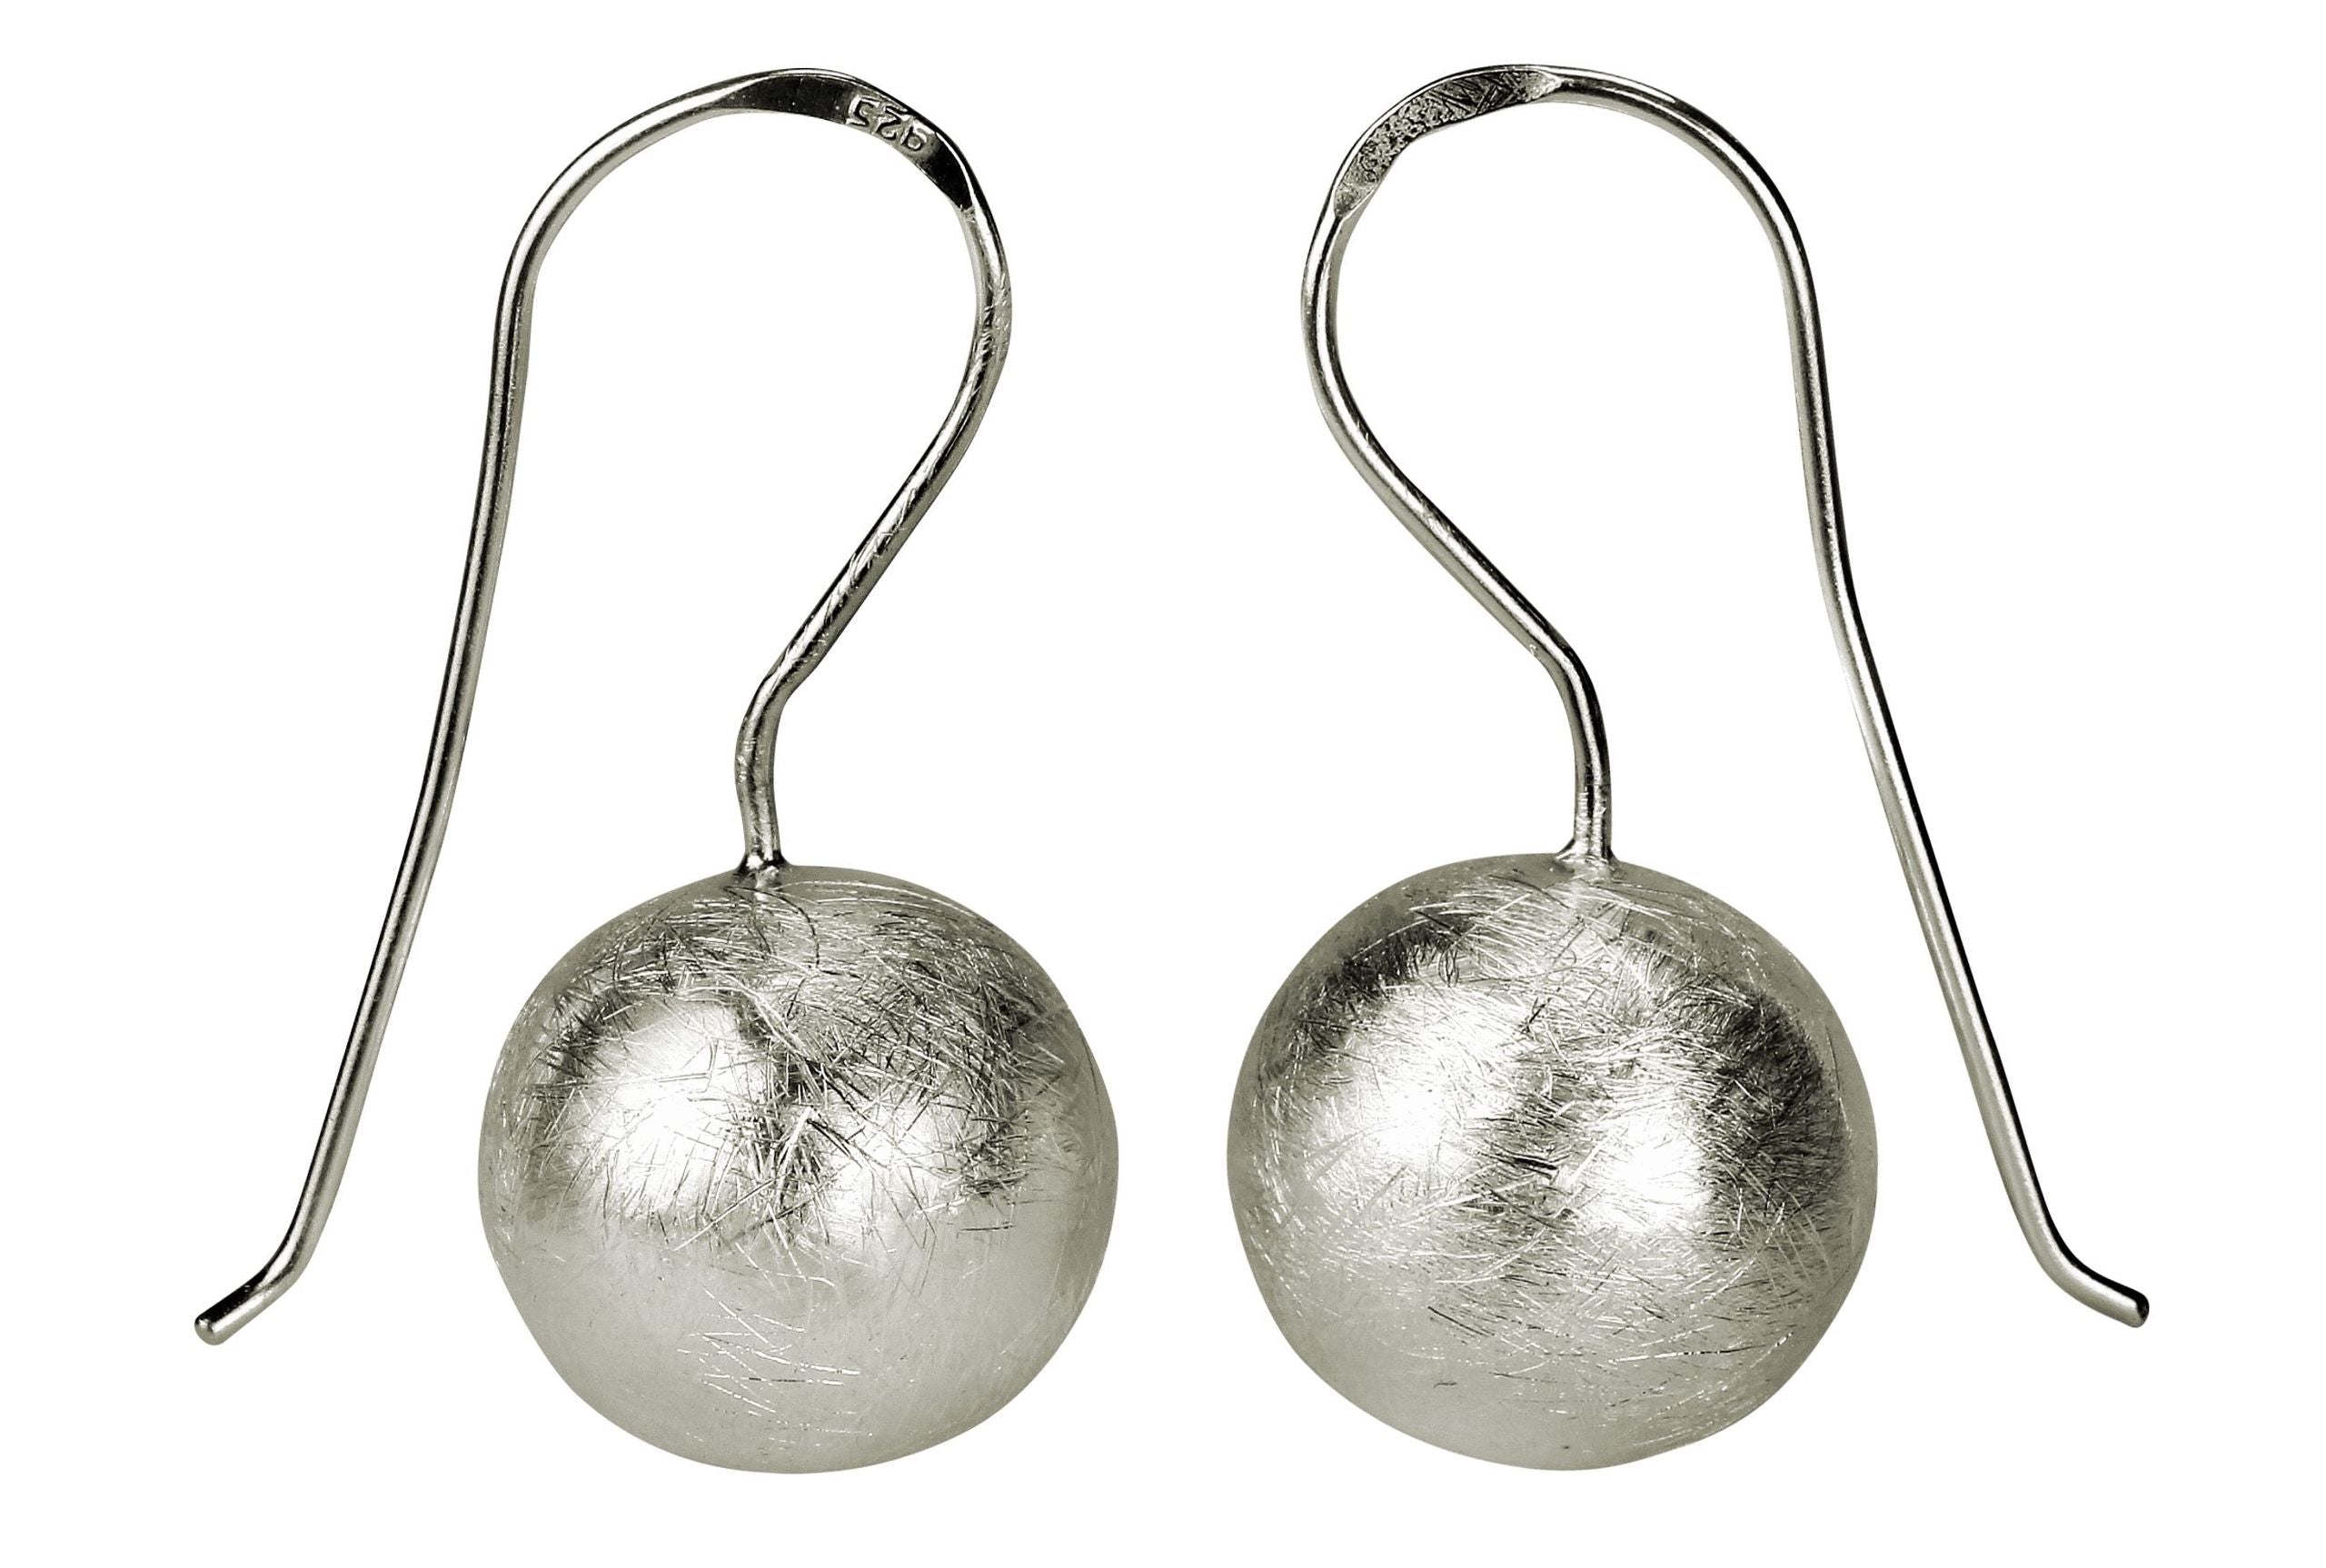 Ohrringe aus Silber für Damen in Form einer am Ohr hängenden Kugel mit gebürsteter Oberfläche.